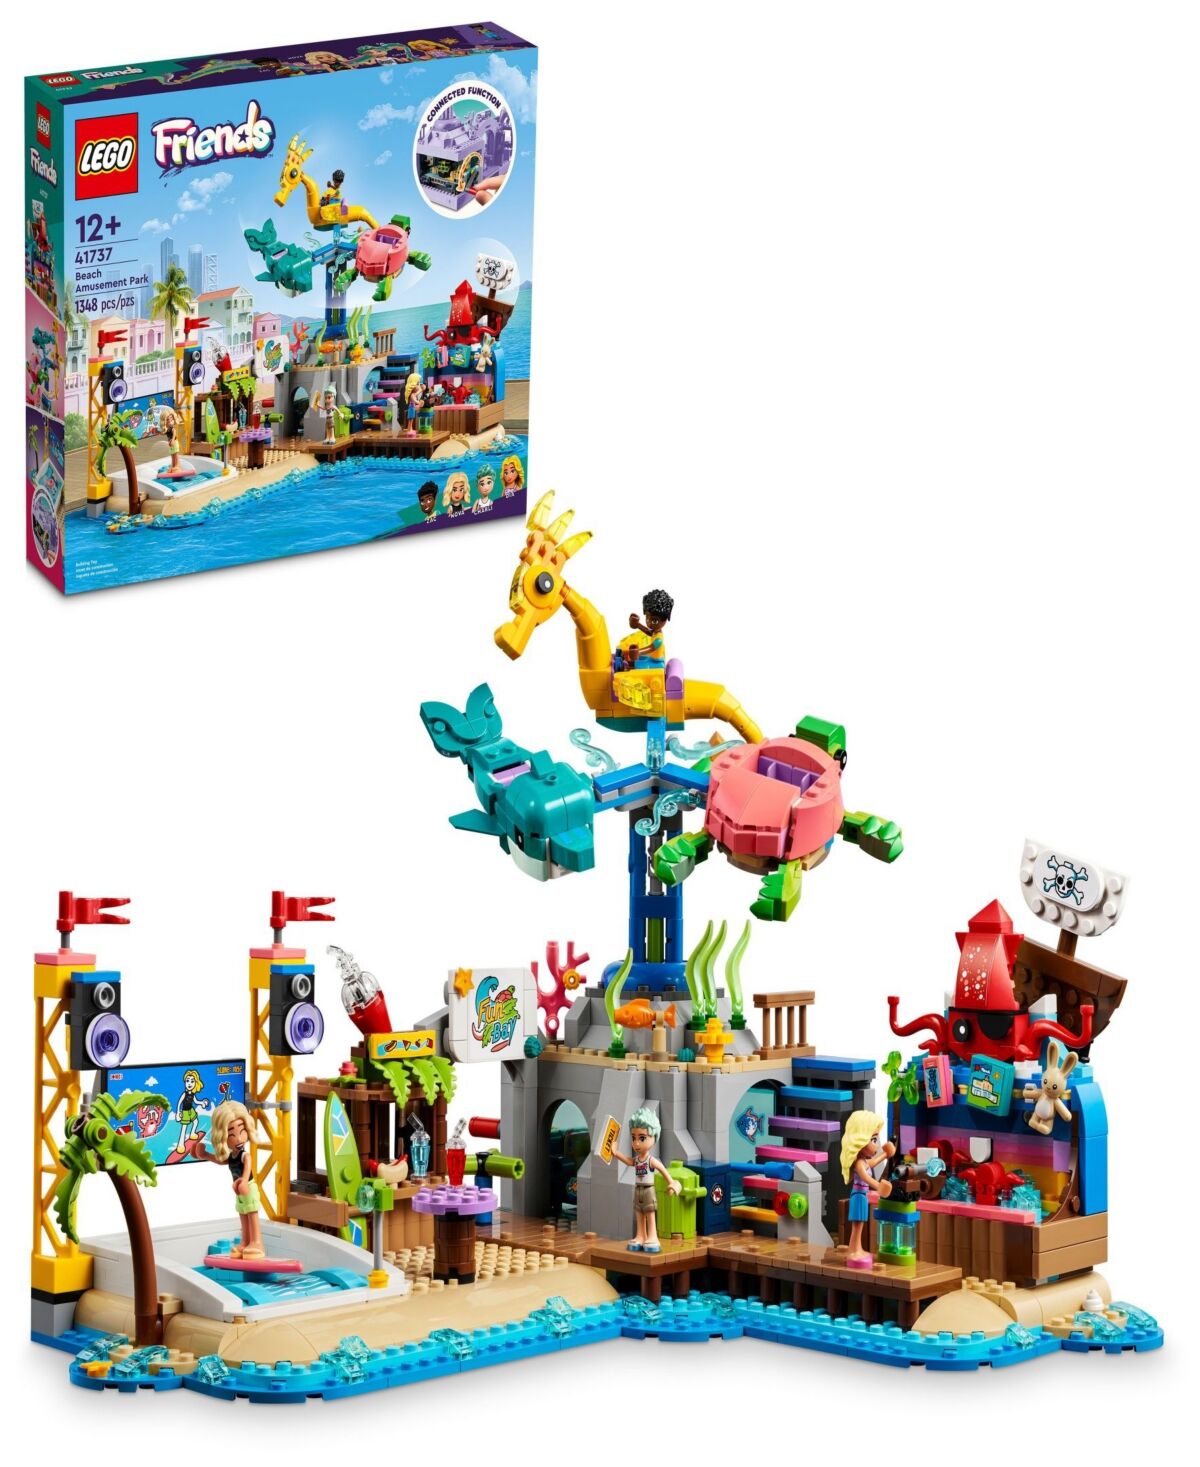 Lego Friends 41737 Beach Amusement Park Toy Adventure Building Set with Minifigures - Multicolor